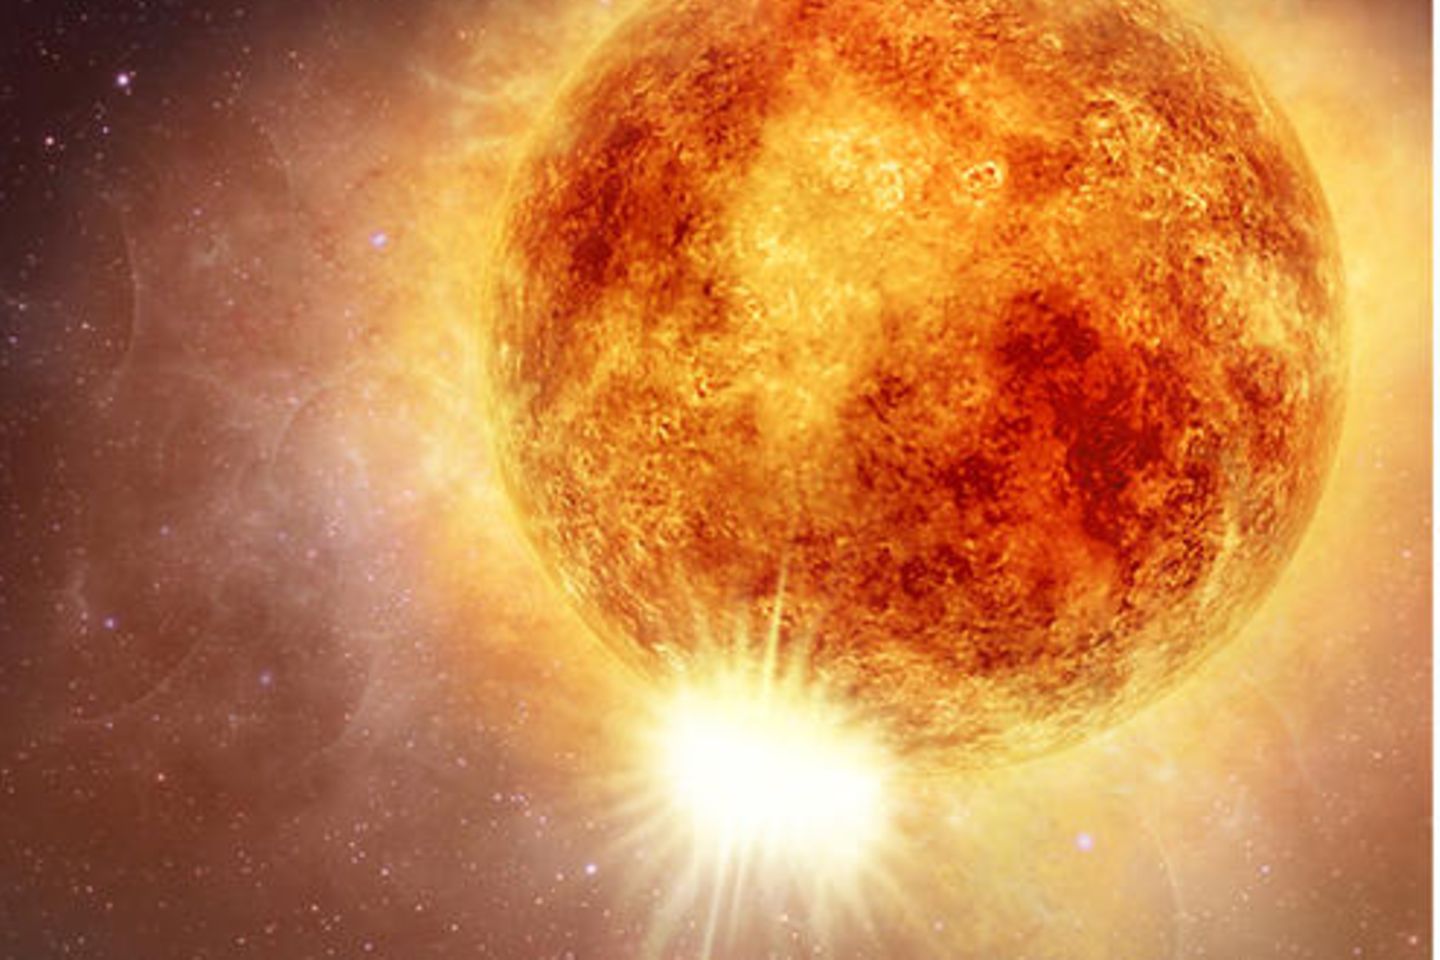 Beteigeuze ist ein Roter Riesenstern, der bis zu 19 Mal mehr Masse enthält als unsere Sonne